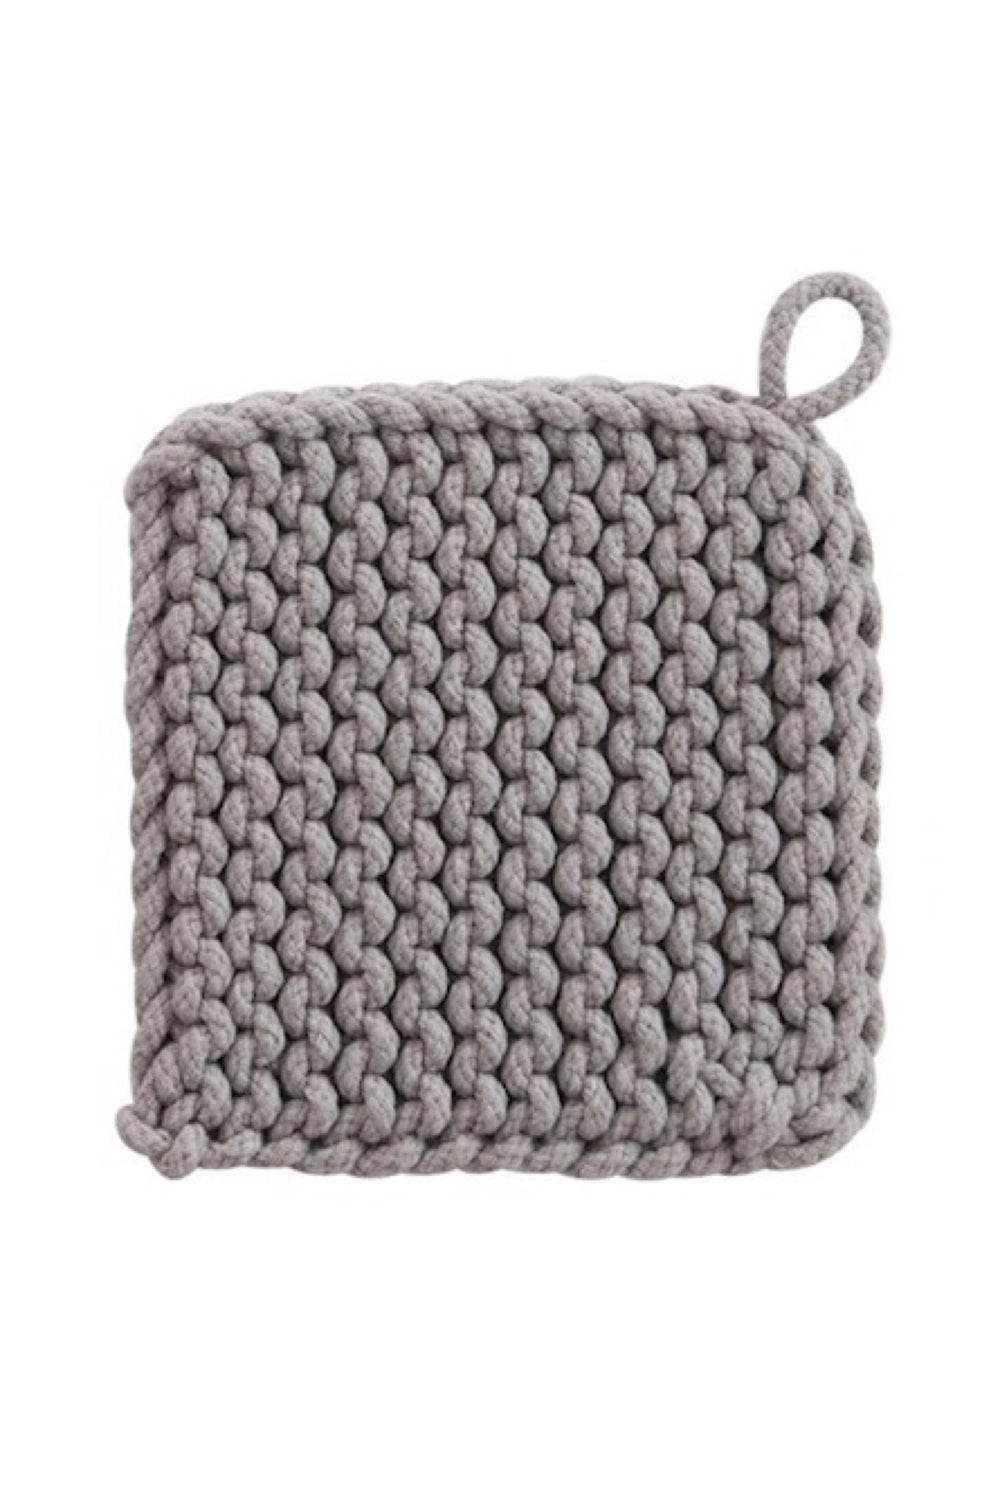 Crochet Pot Holder 002